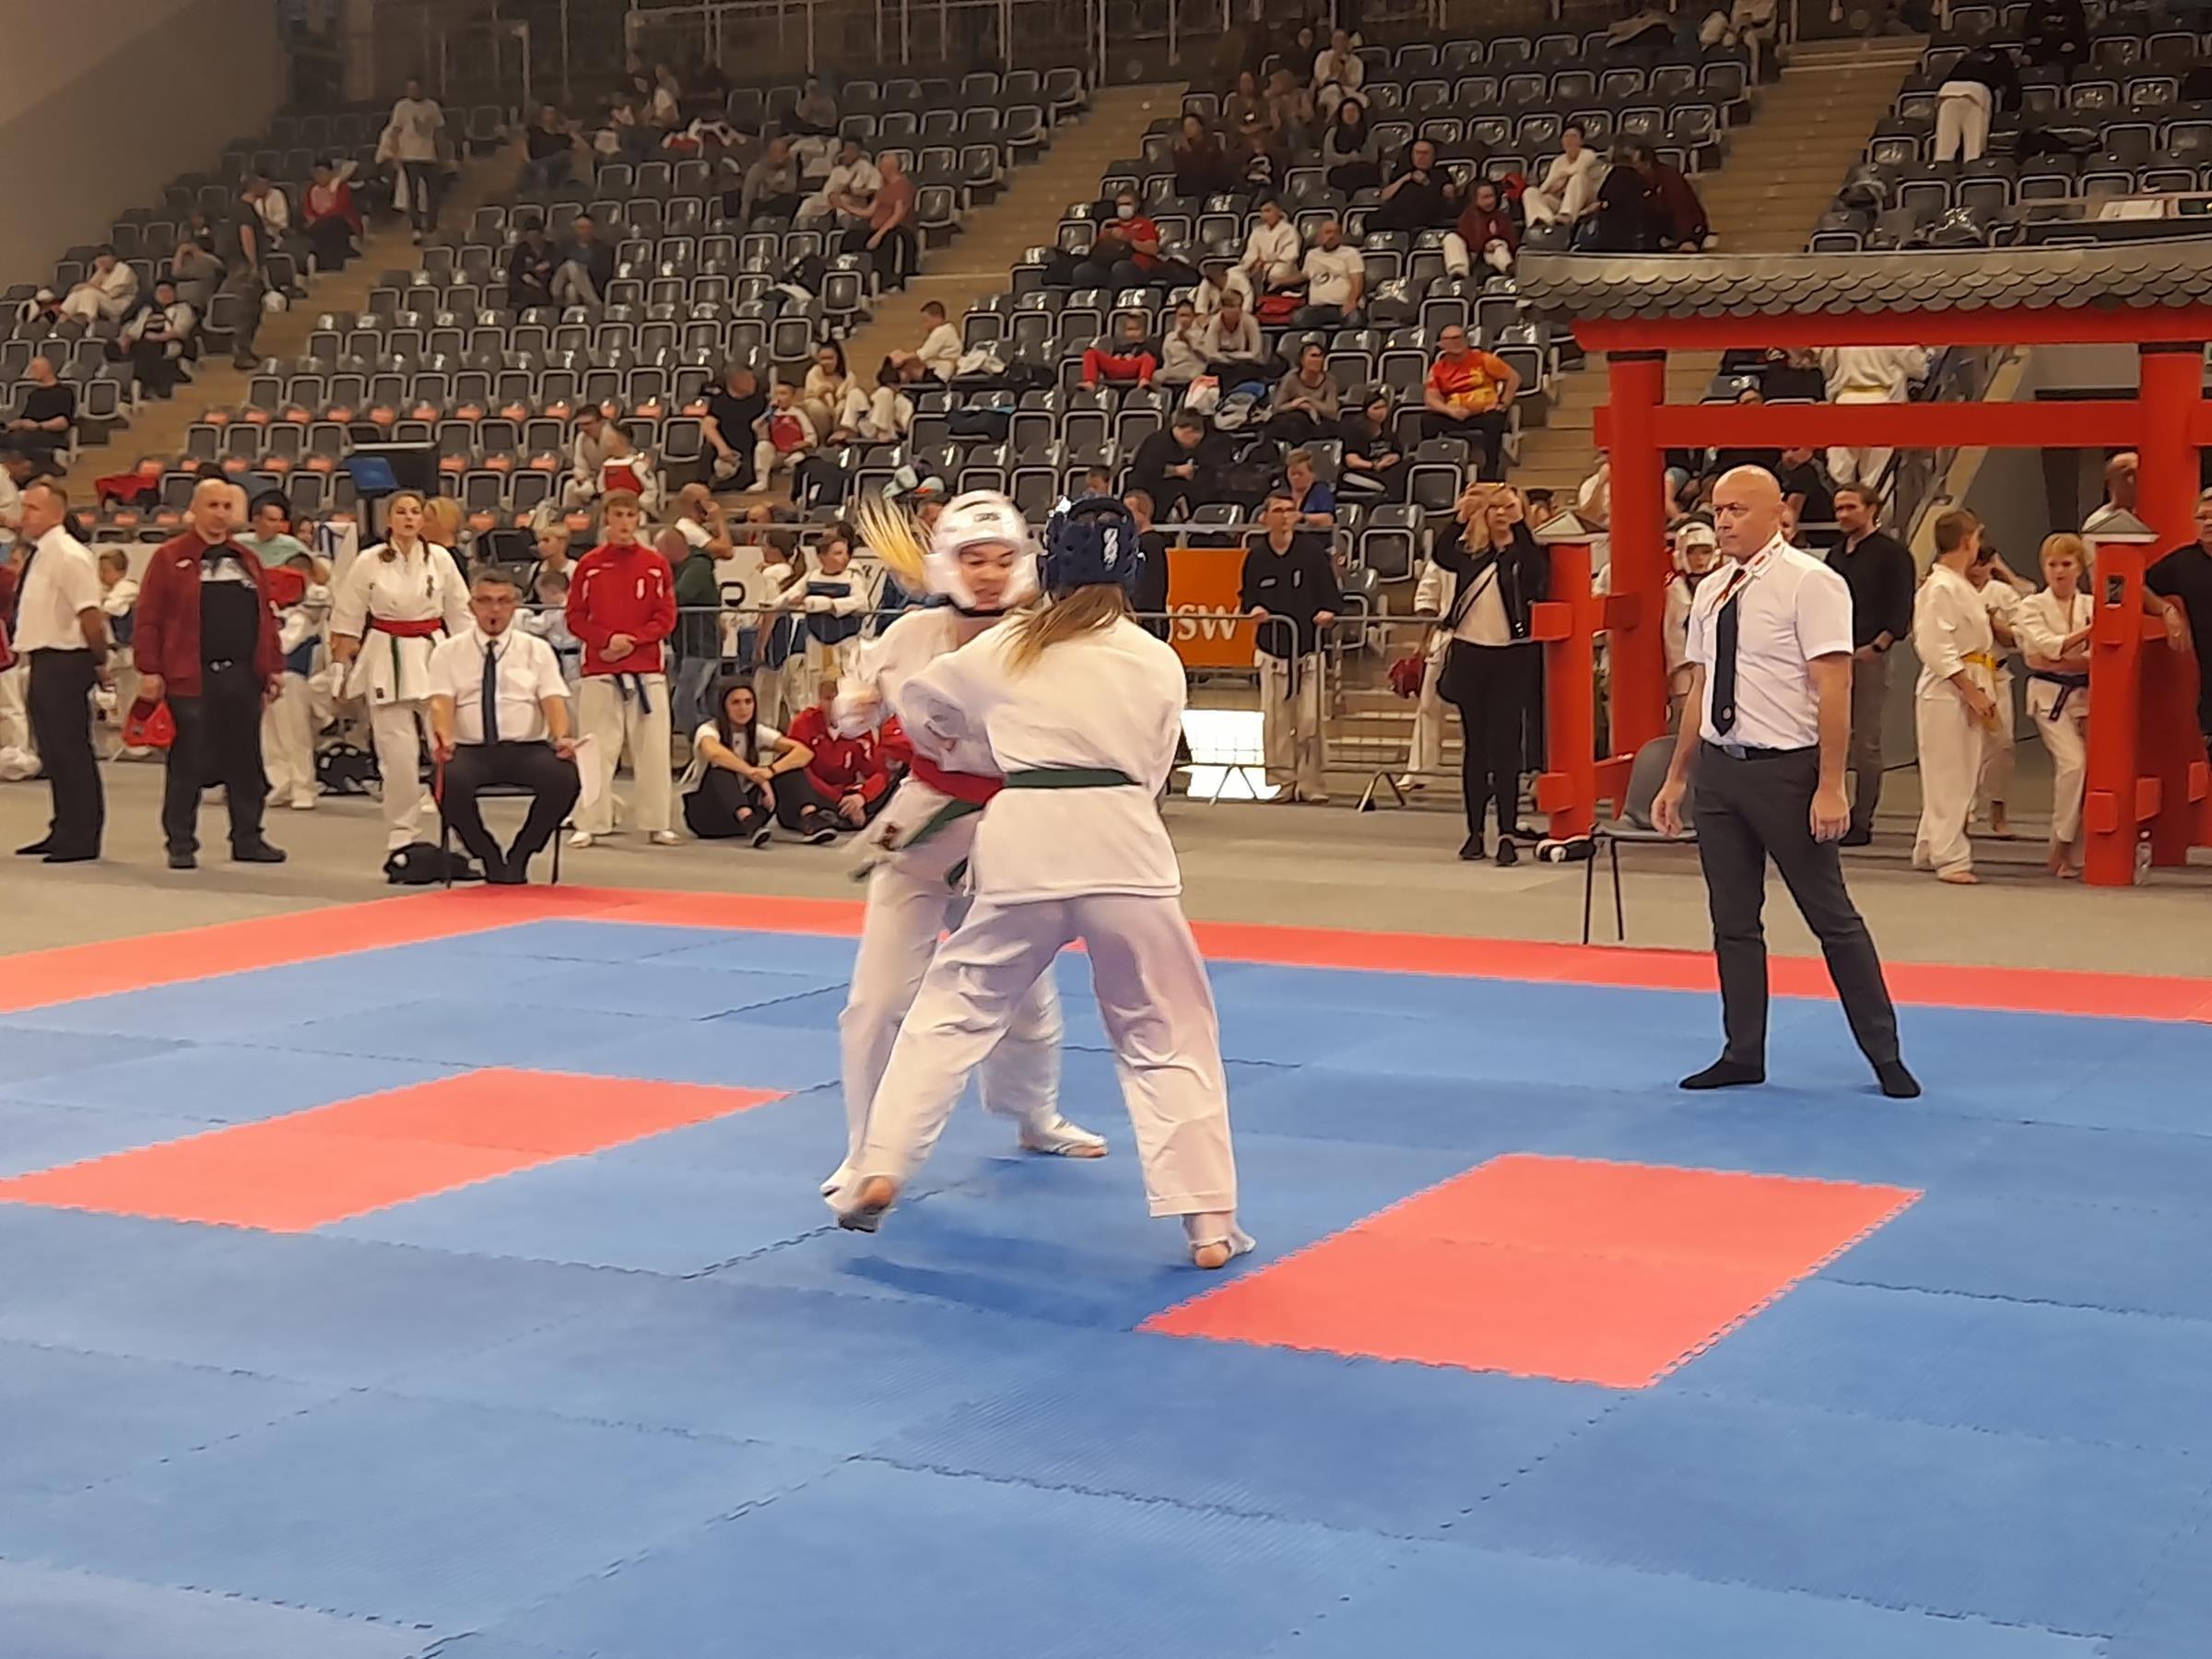 Zdj. nr. 5. XIII Międzynarodowy Turniej Karate Kyokushin CARBON CUP – 30.10.2021 r., Jastrzębie Zdrój